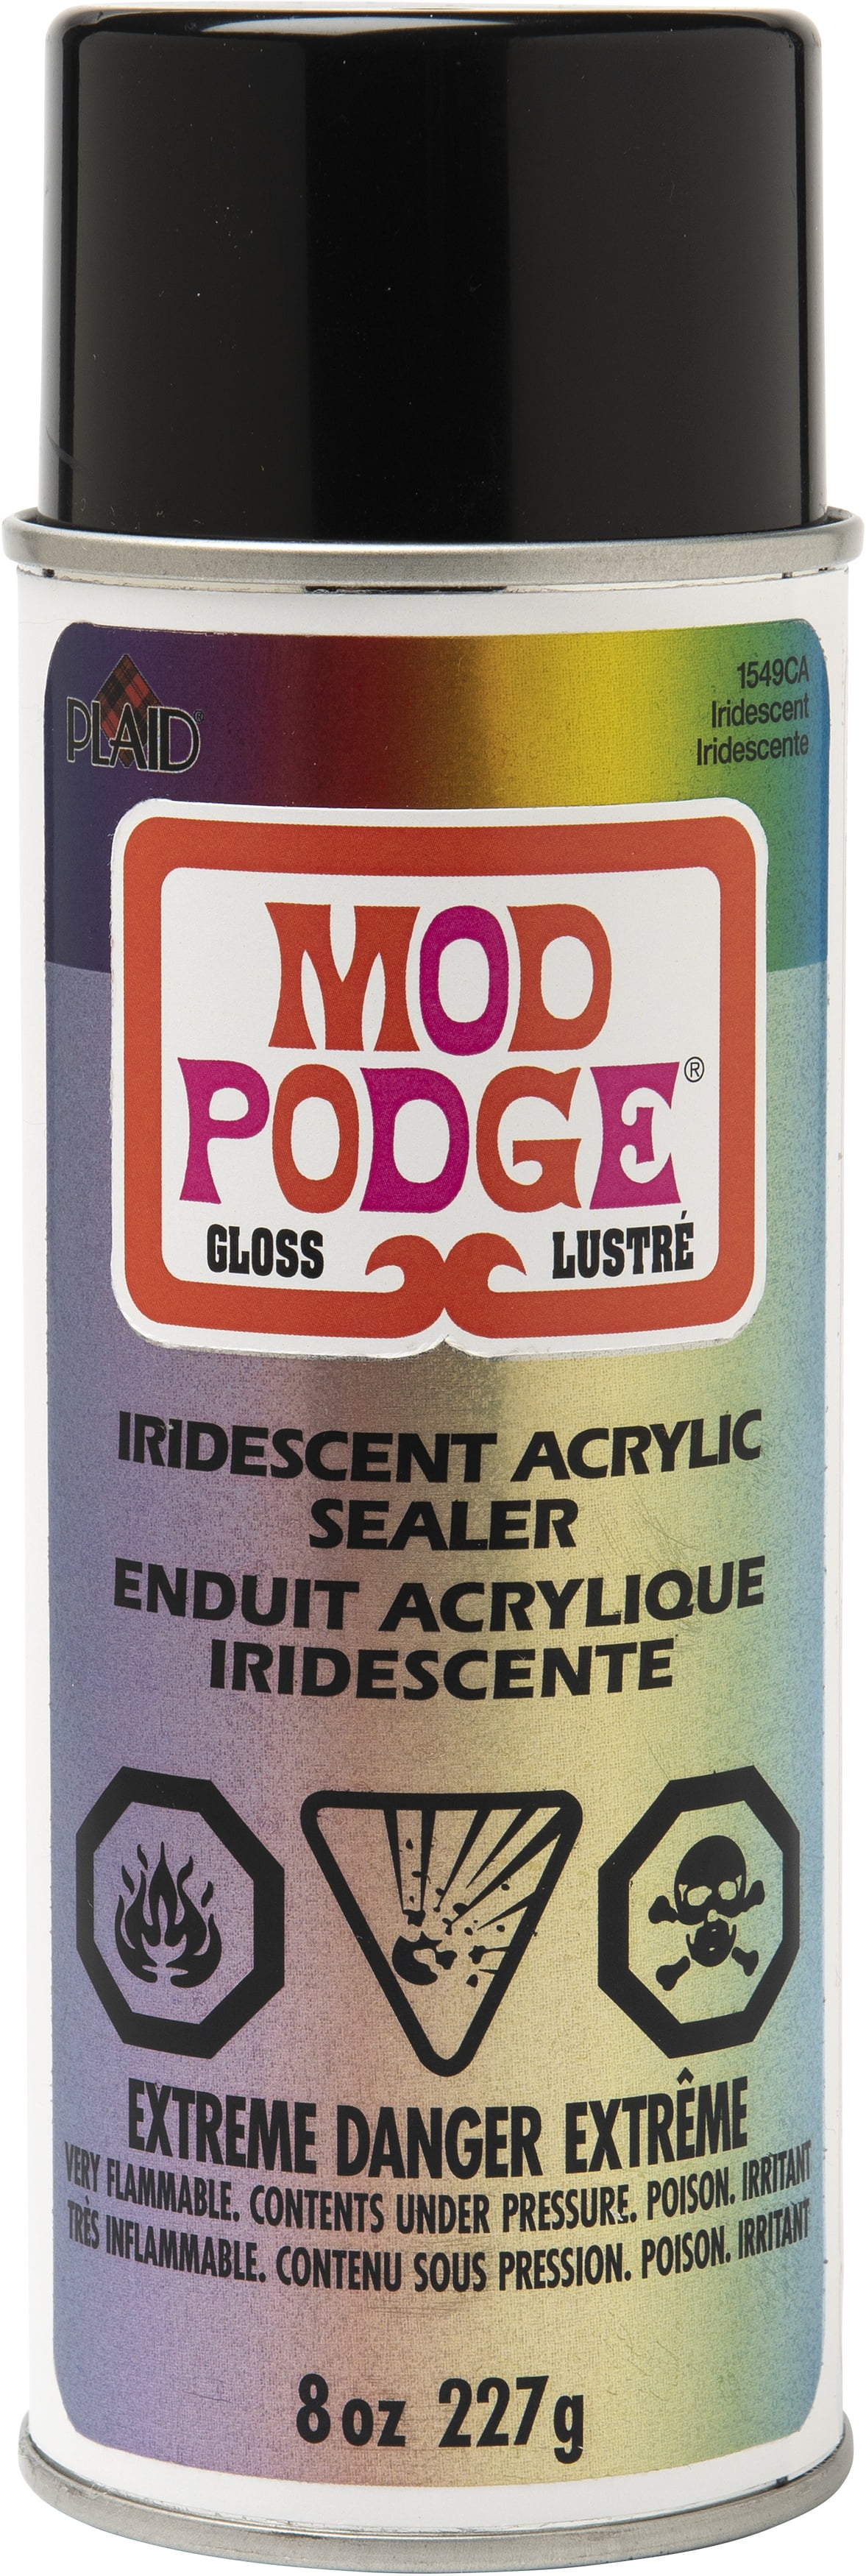 Plaid Mod Podge Clear Acrylic Sealer, Gloss 